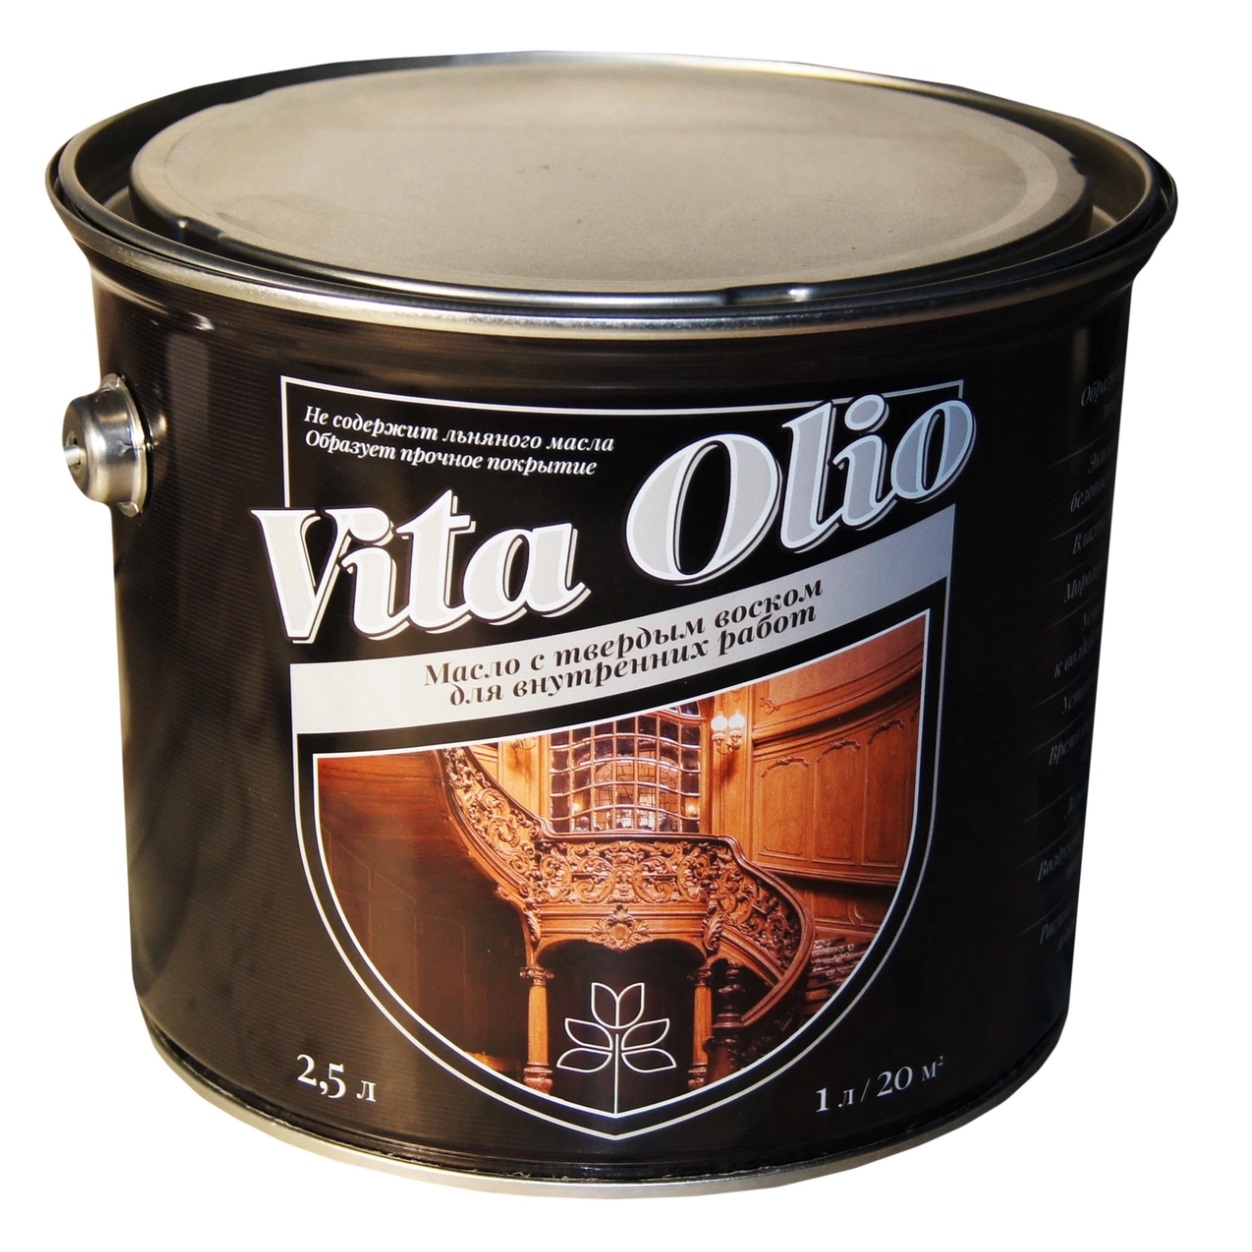 Масло VITA OLIO для внутренних работ с твердым воском шелковисто-матовое цвет эбеновое дерево. 2,5 л.